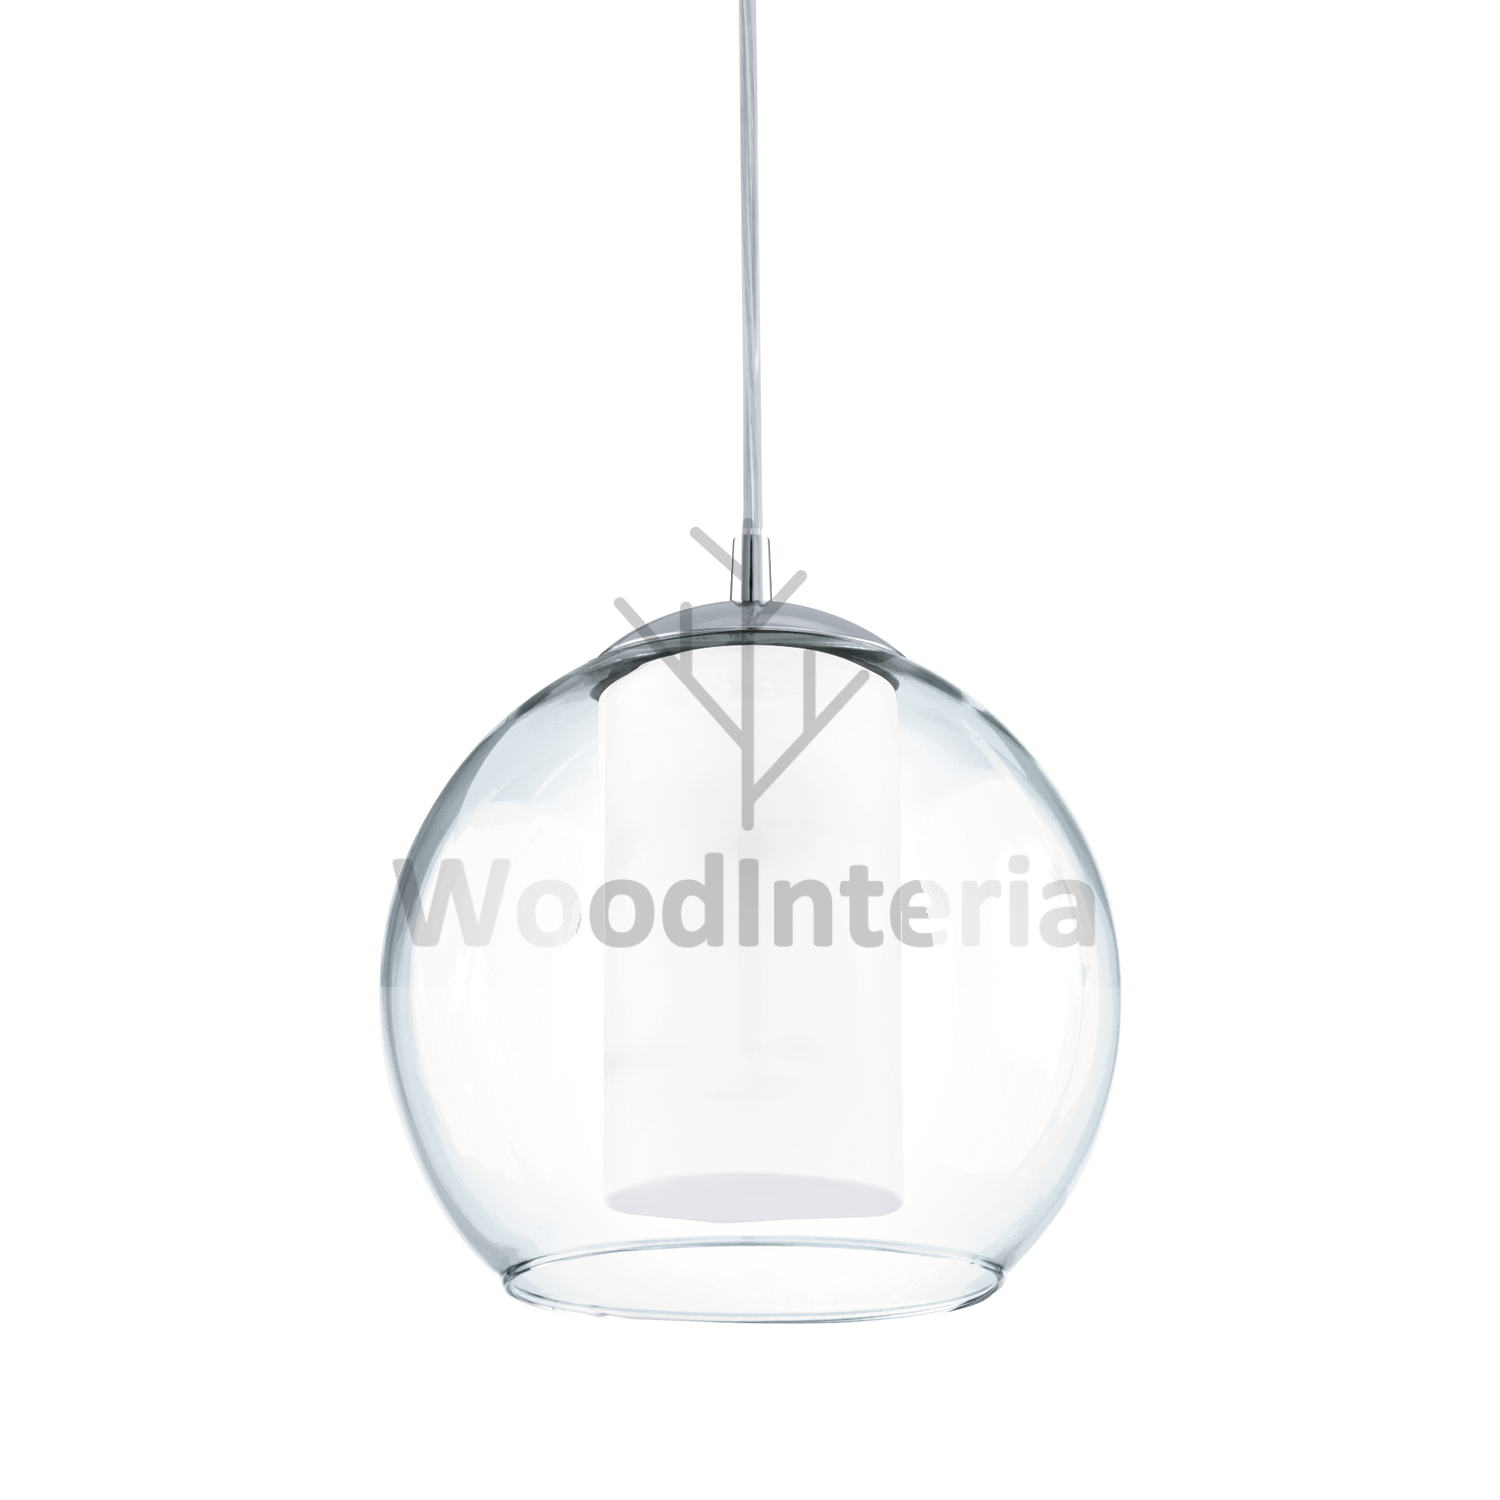 фото подвесной светильник bubble one в скандинавском интерьере лофт эко | WoodInteria